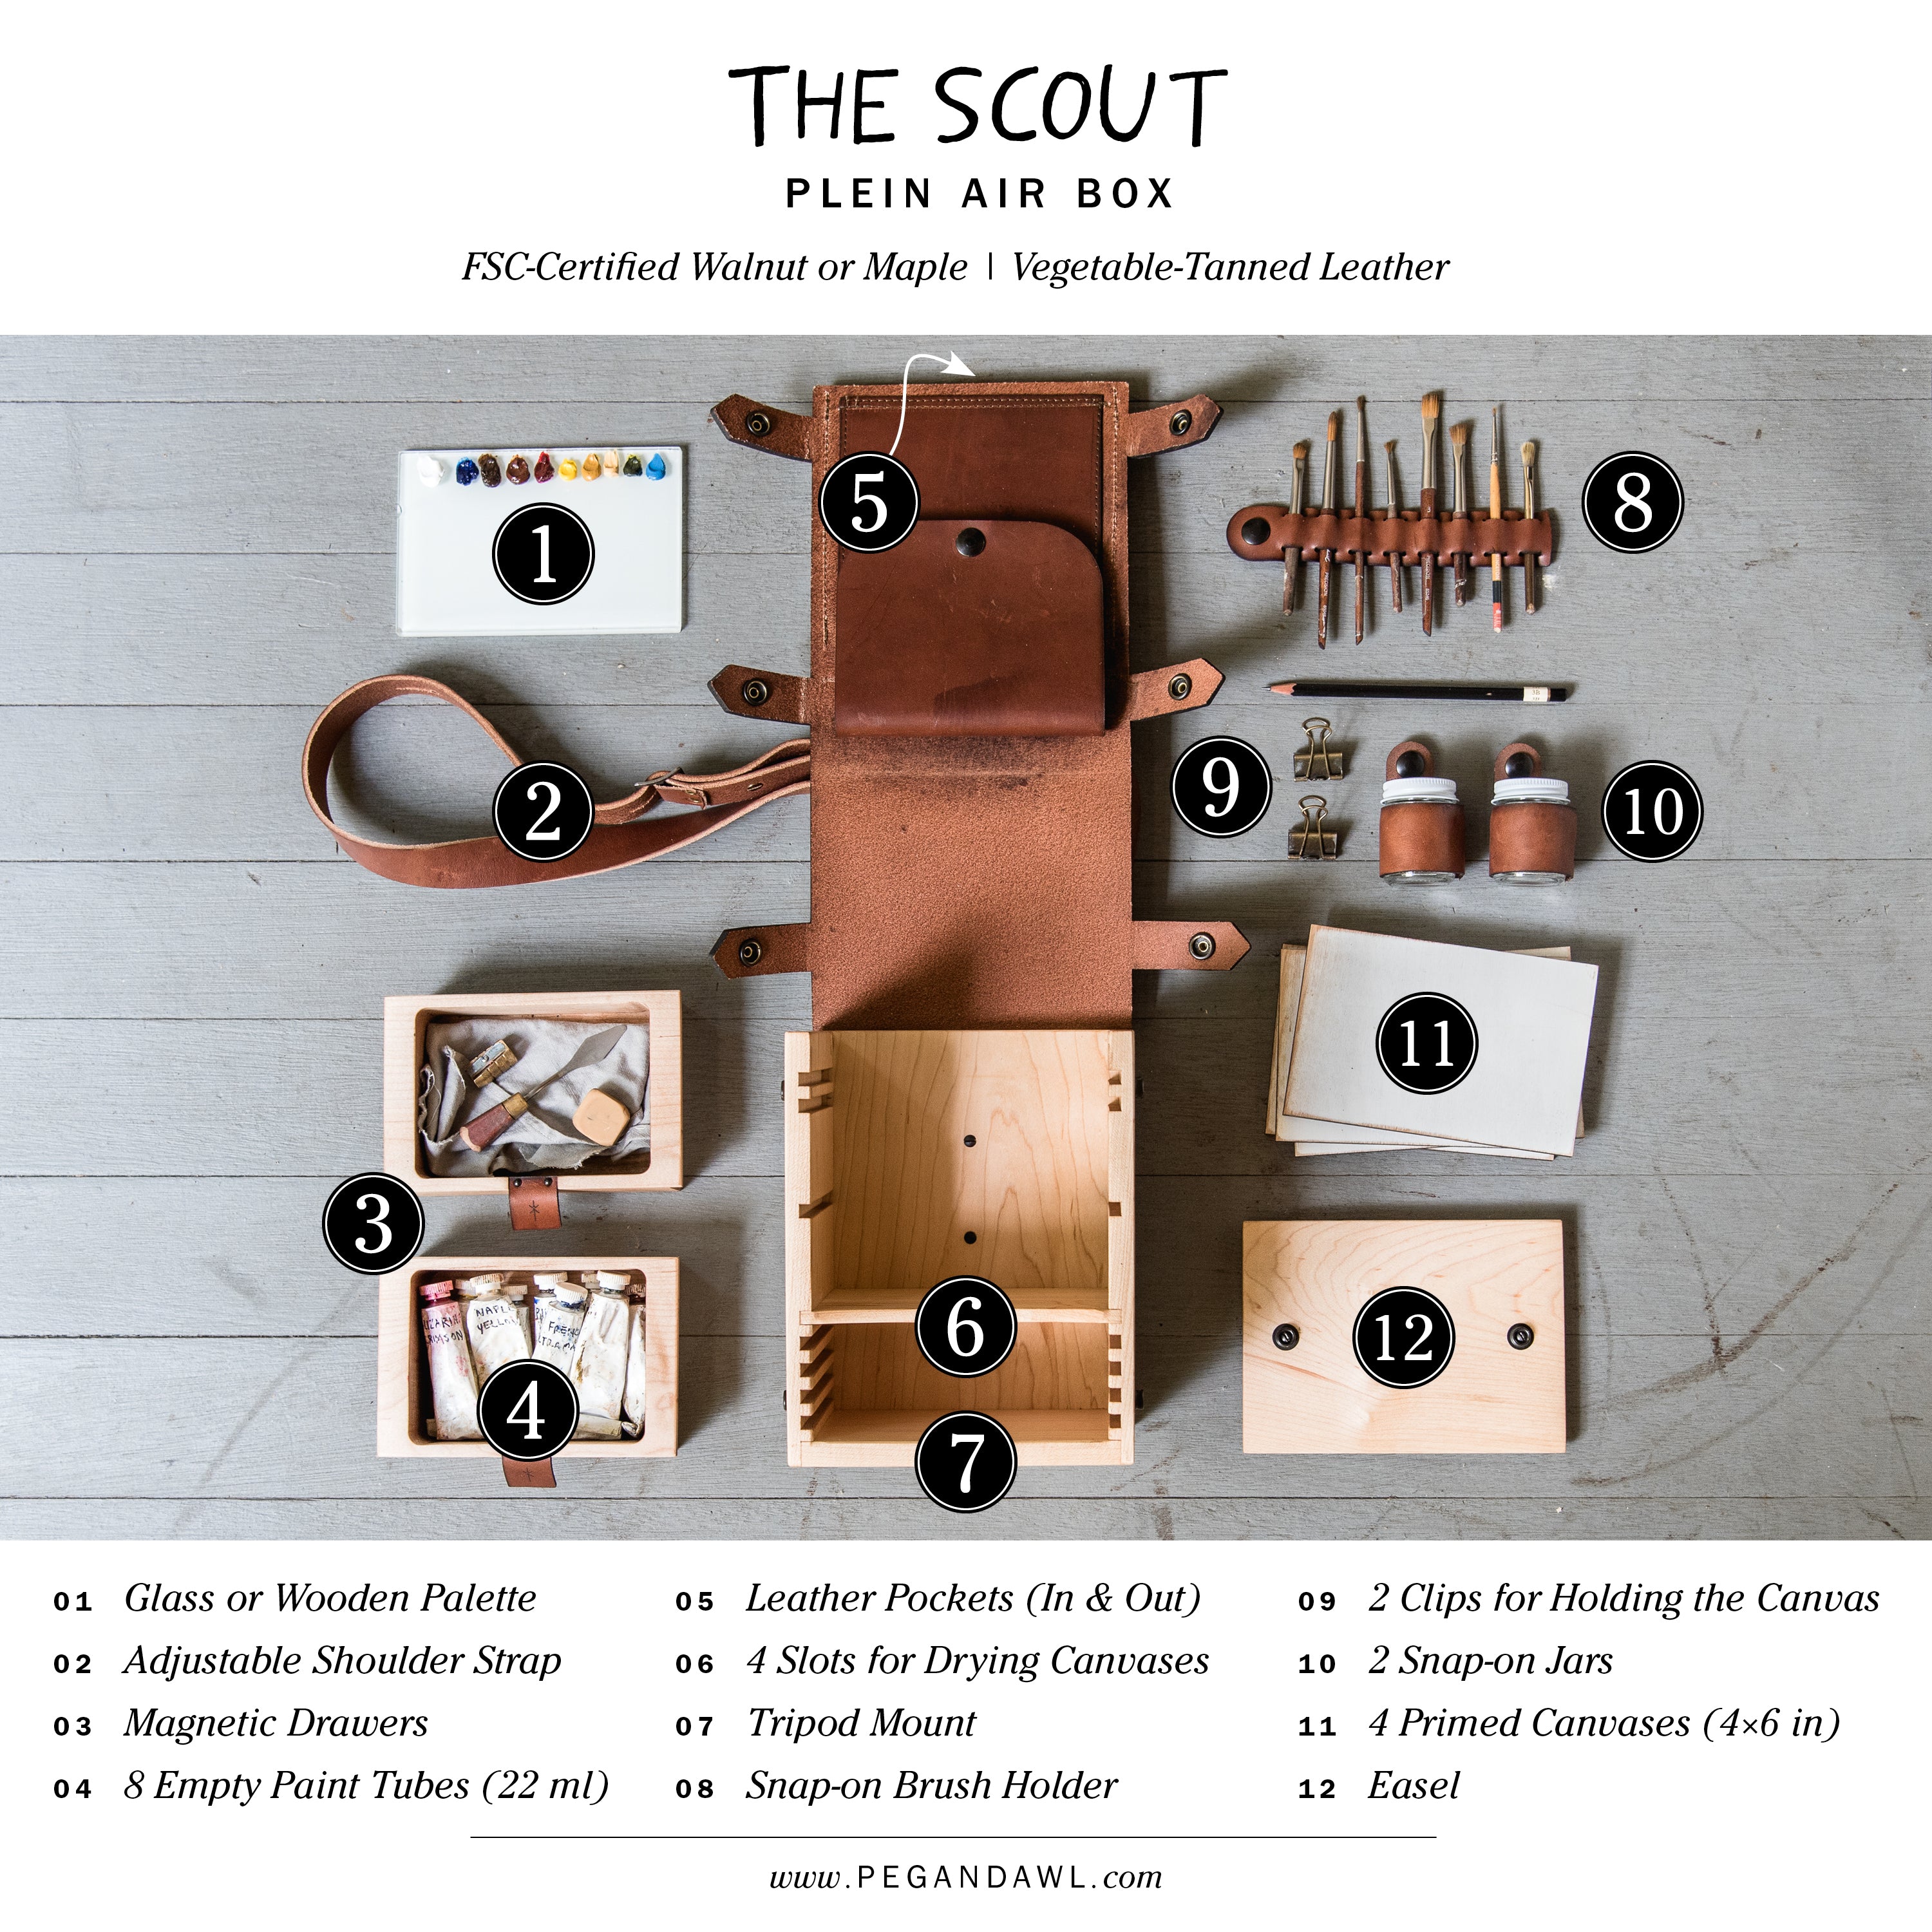 The Scout Plein Air Box